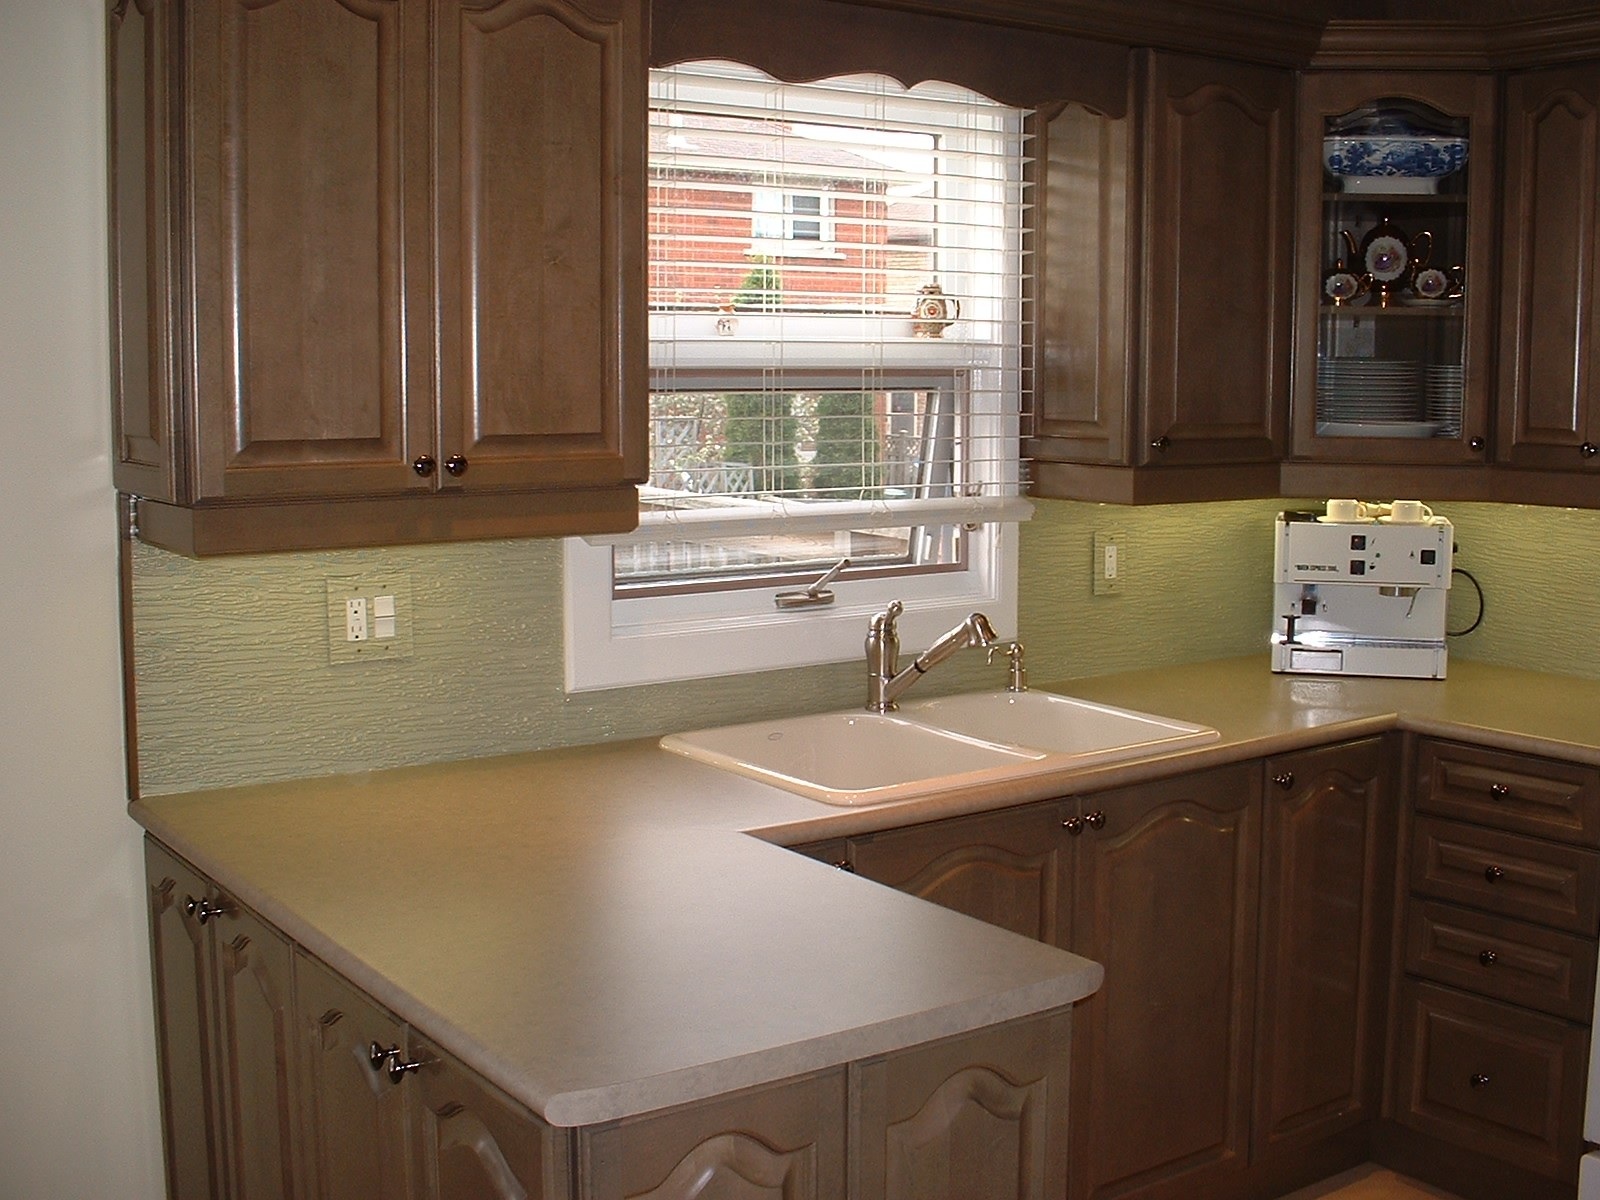 G396 Patterned and Painted Glass Kitchen Backsplash - V.jpg